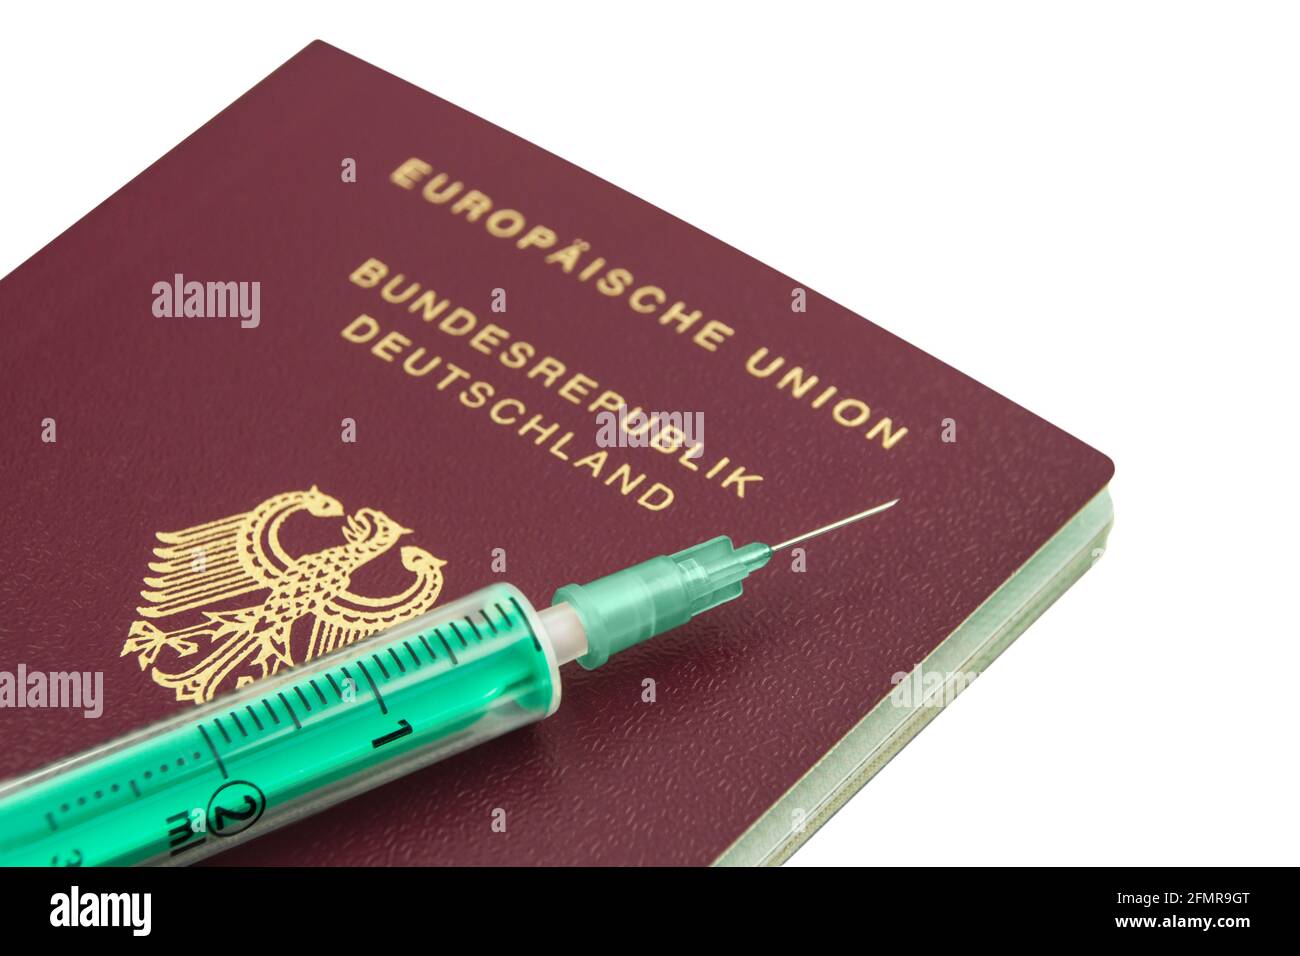 Corona Impfung und Deutscher Reisepass mit Spritze isoliert auf weissem Hintergrund Stock Photo